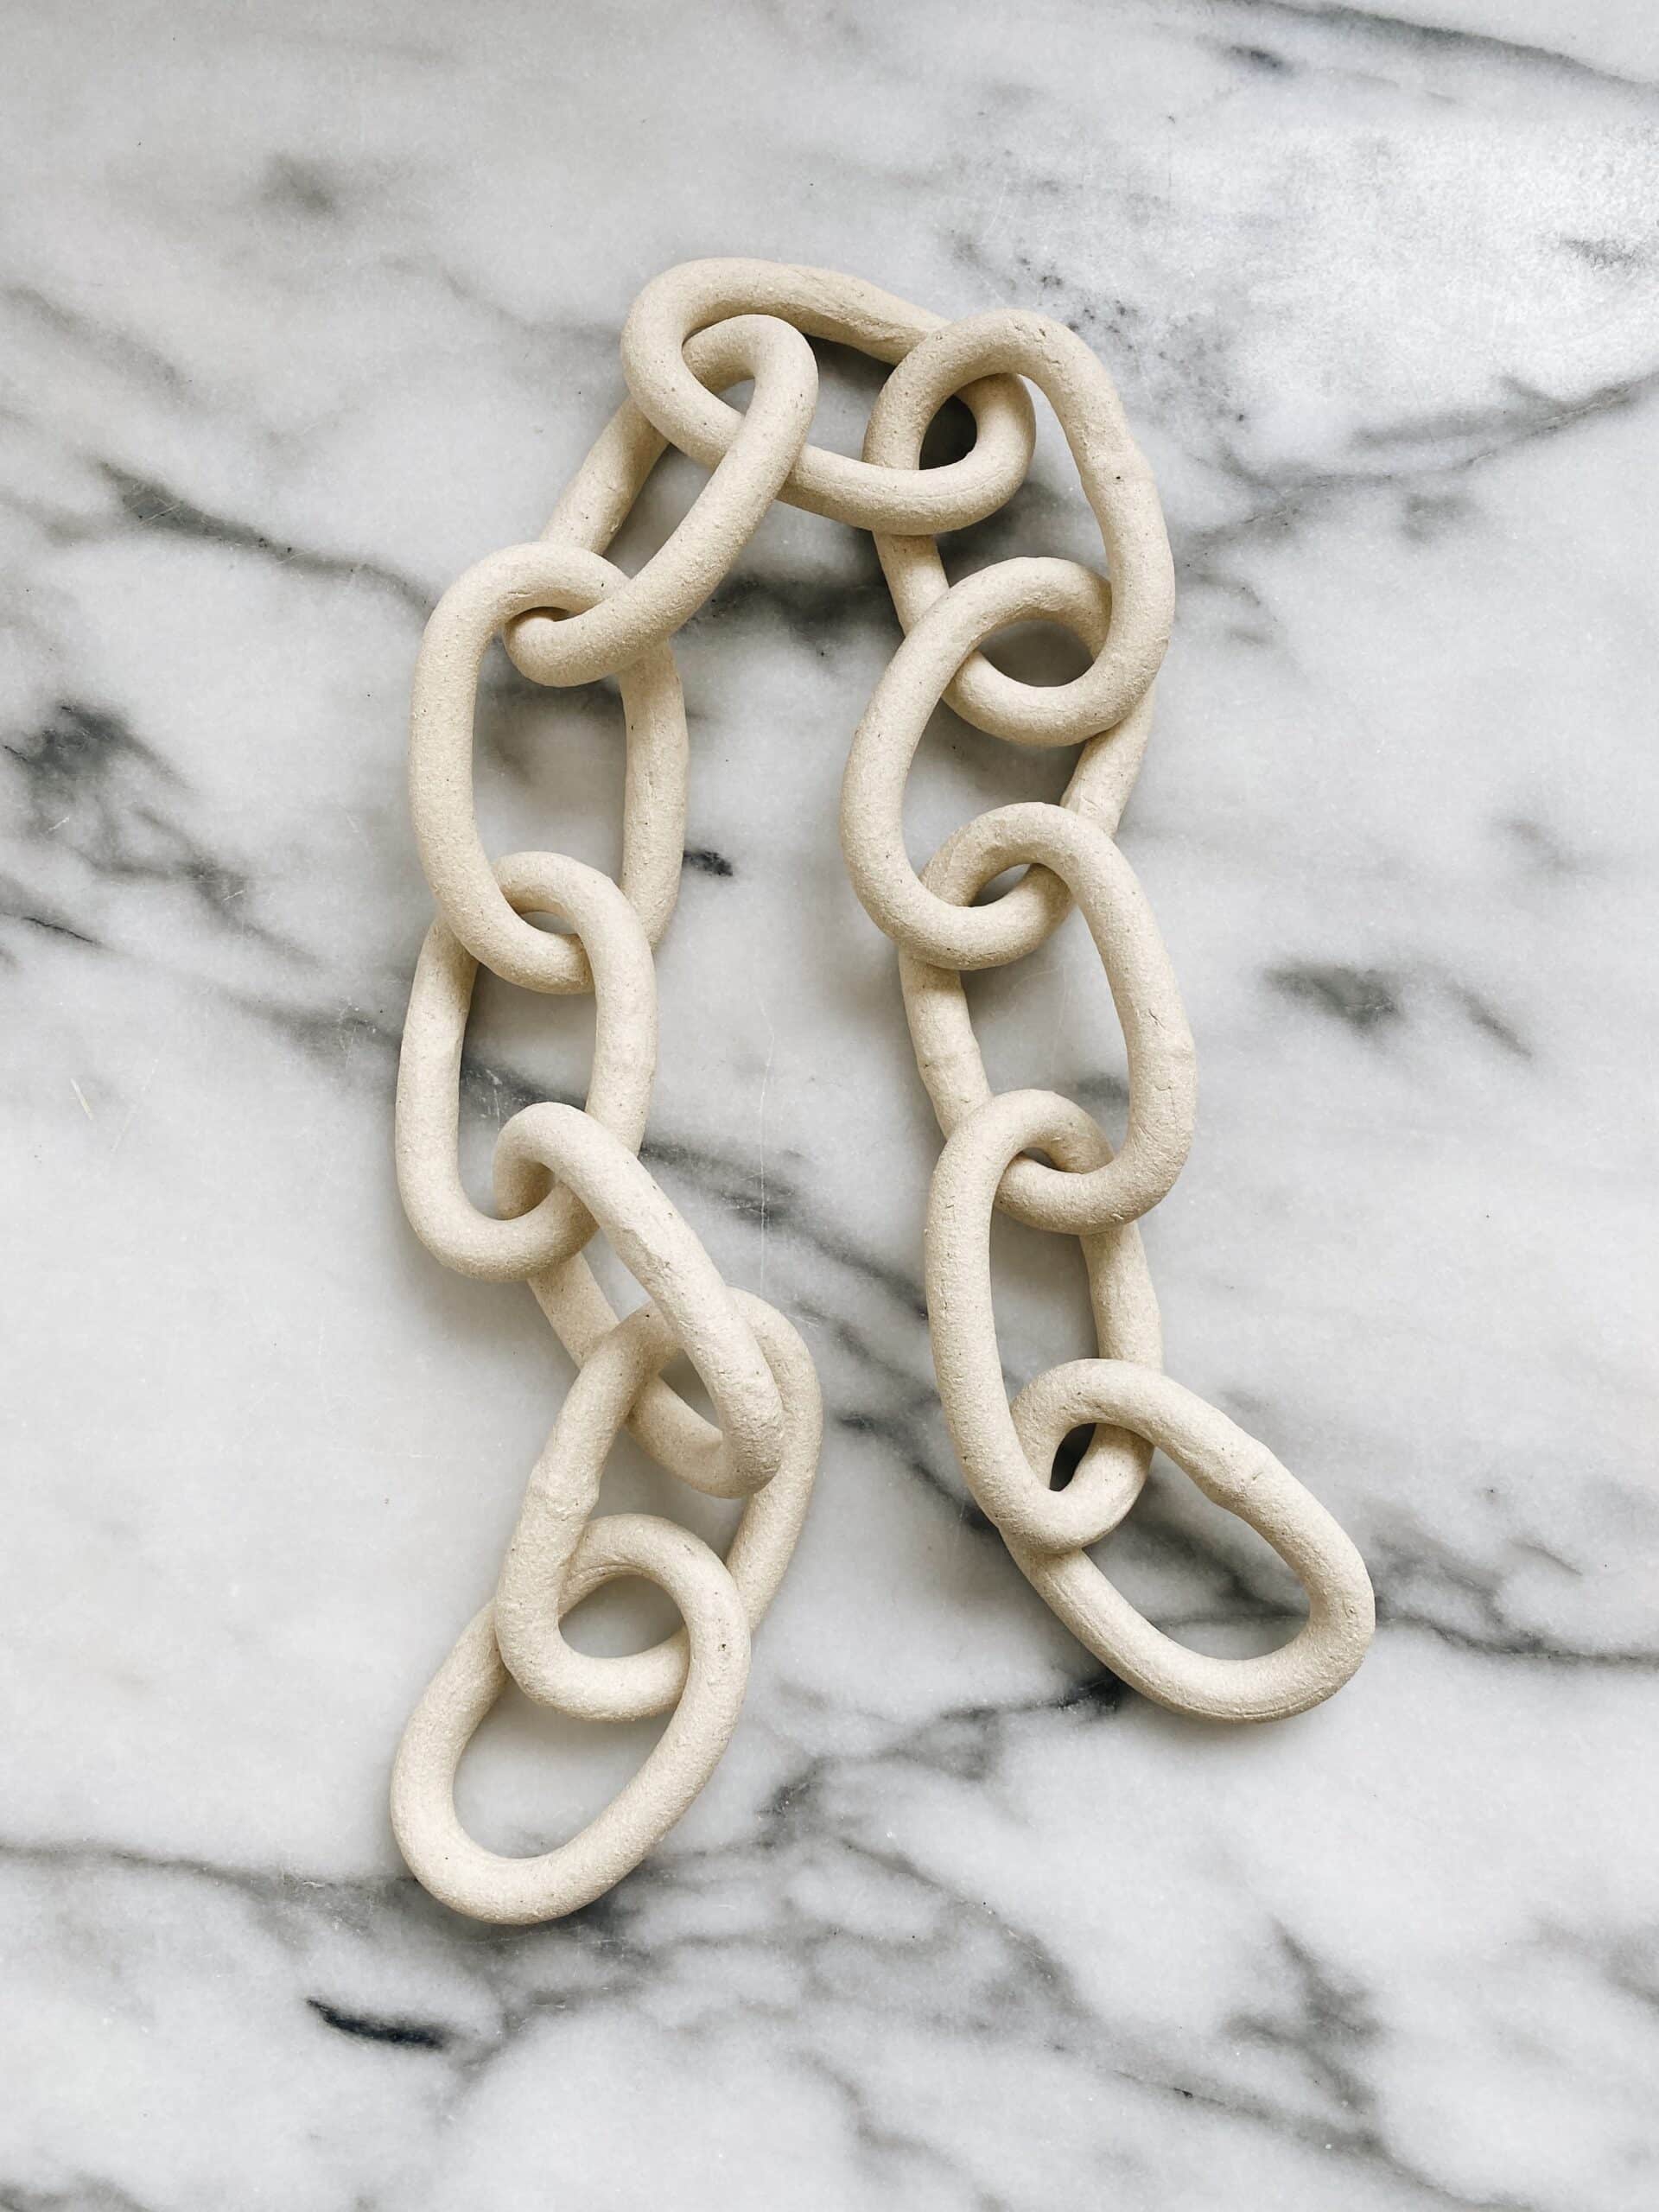 Medium Ceramic Decorative Chain